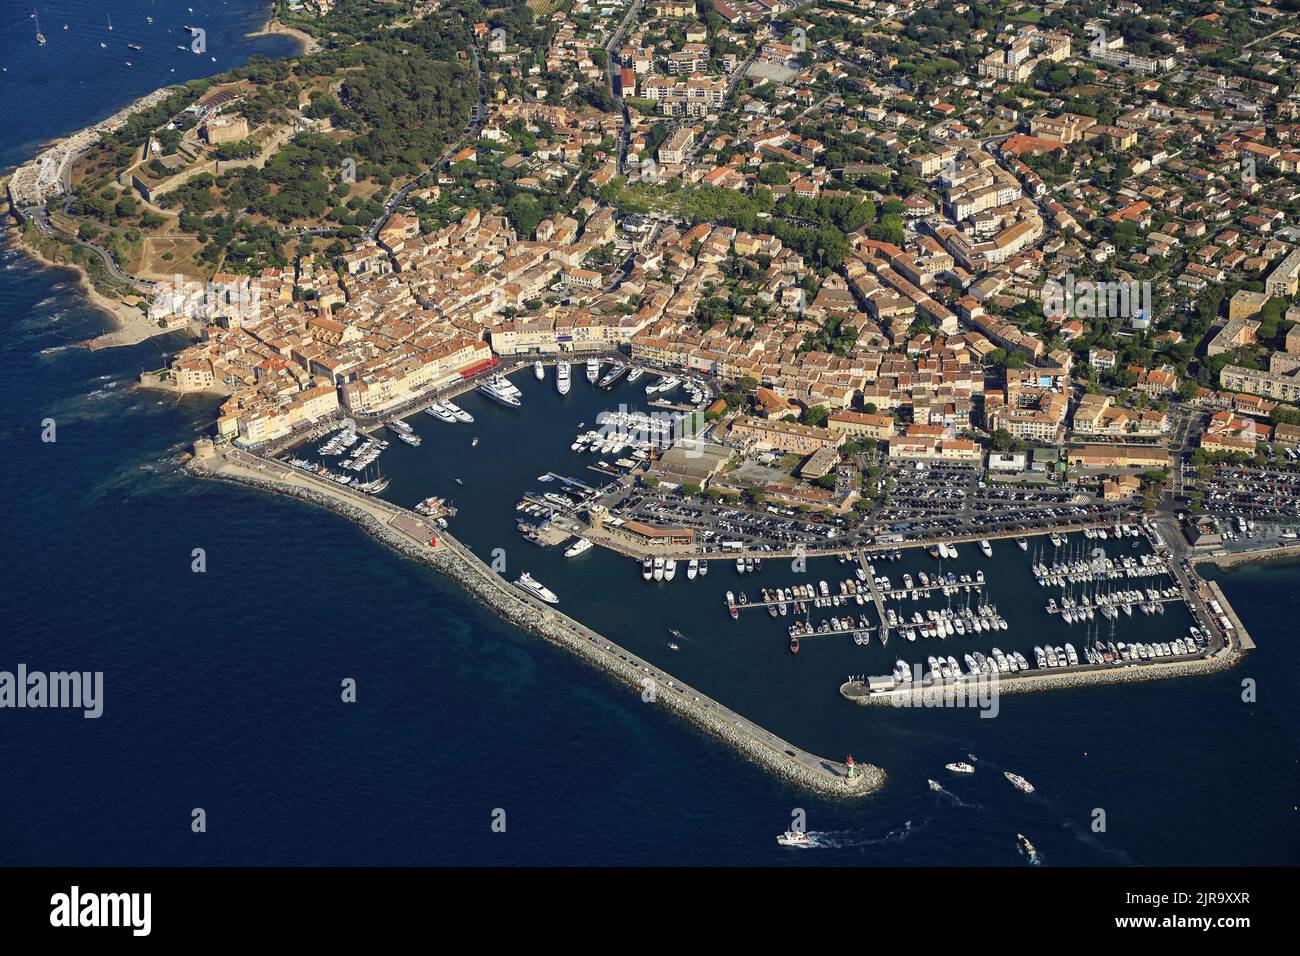 Saint-Tropez, im Département Var (Südostfrankreich): Luftaufnahme des noblen Badeortes auf der gleichnamigen Halbinsel und seinem Yachthafen Stockfoto